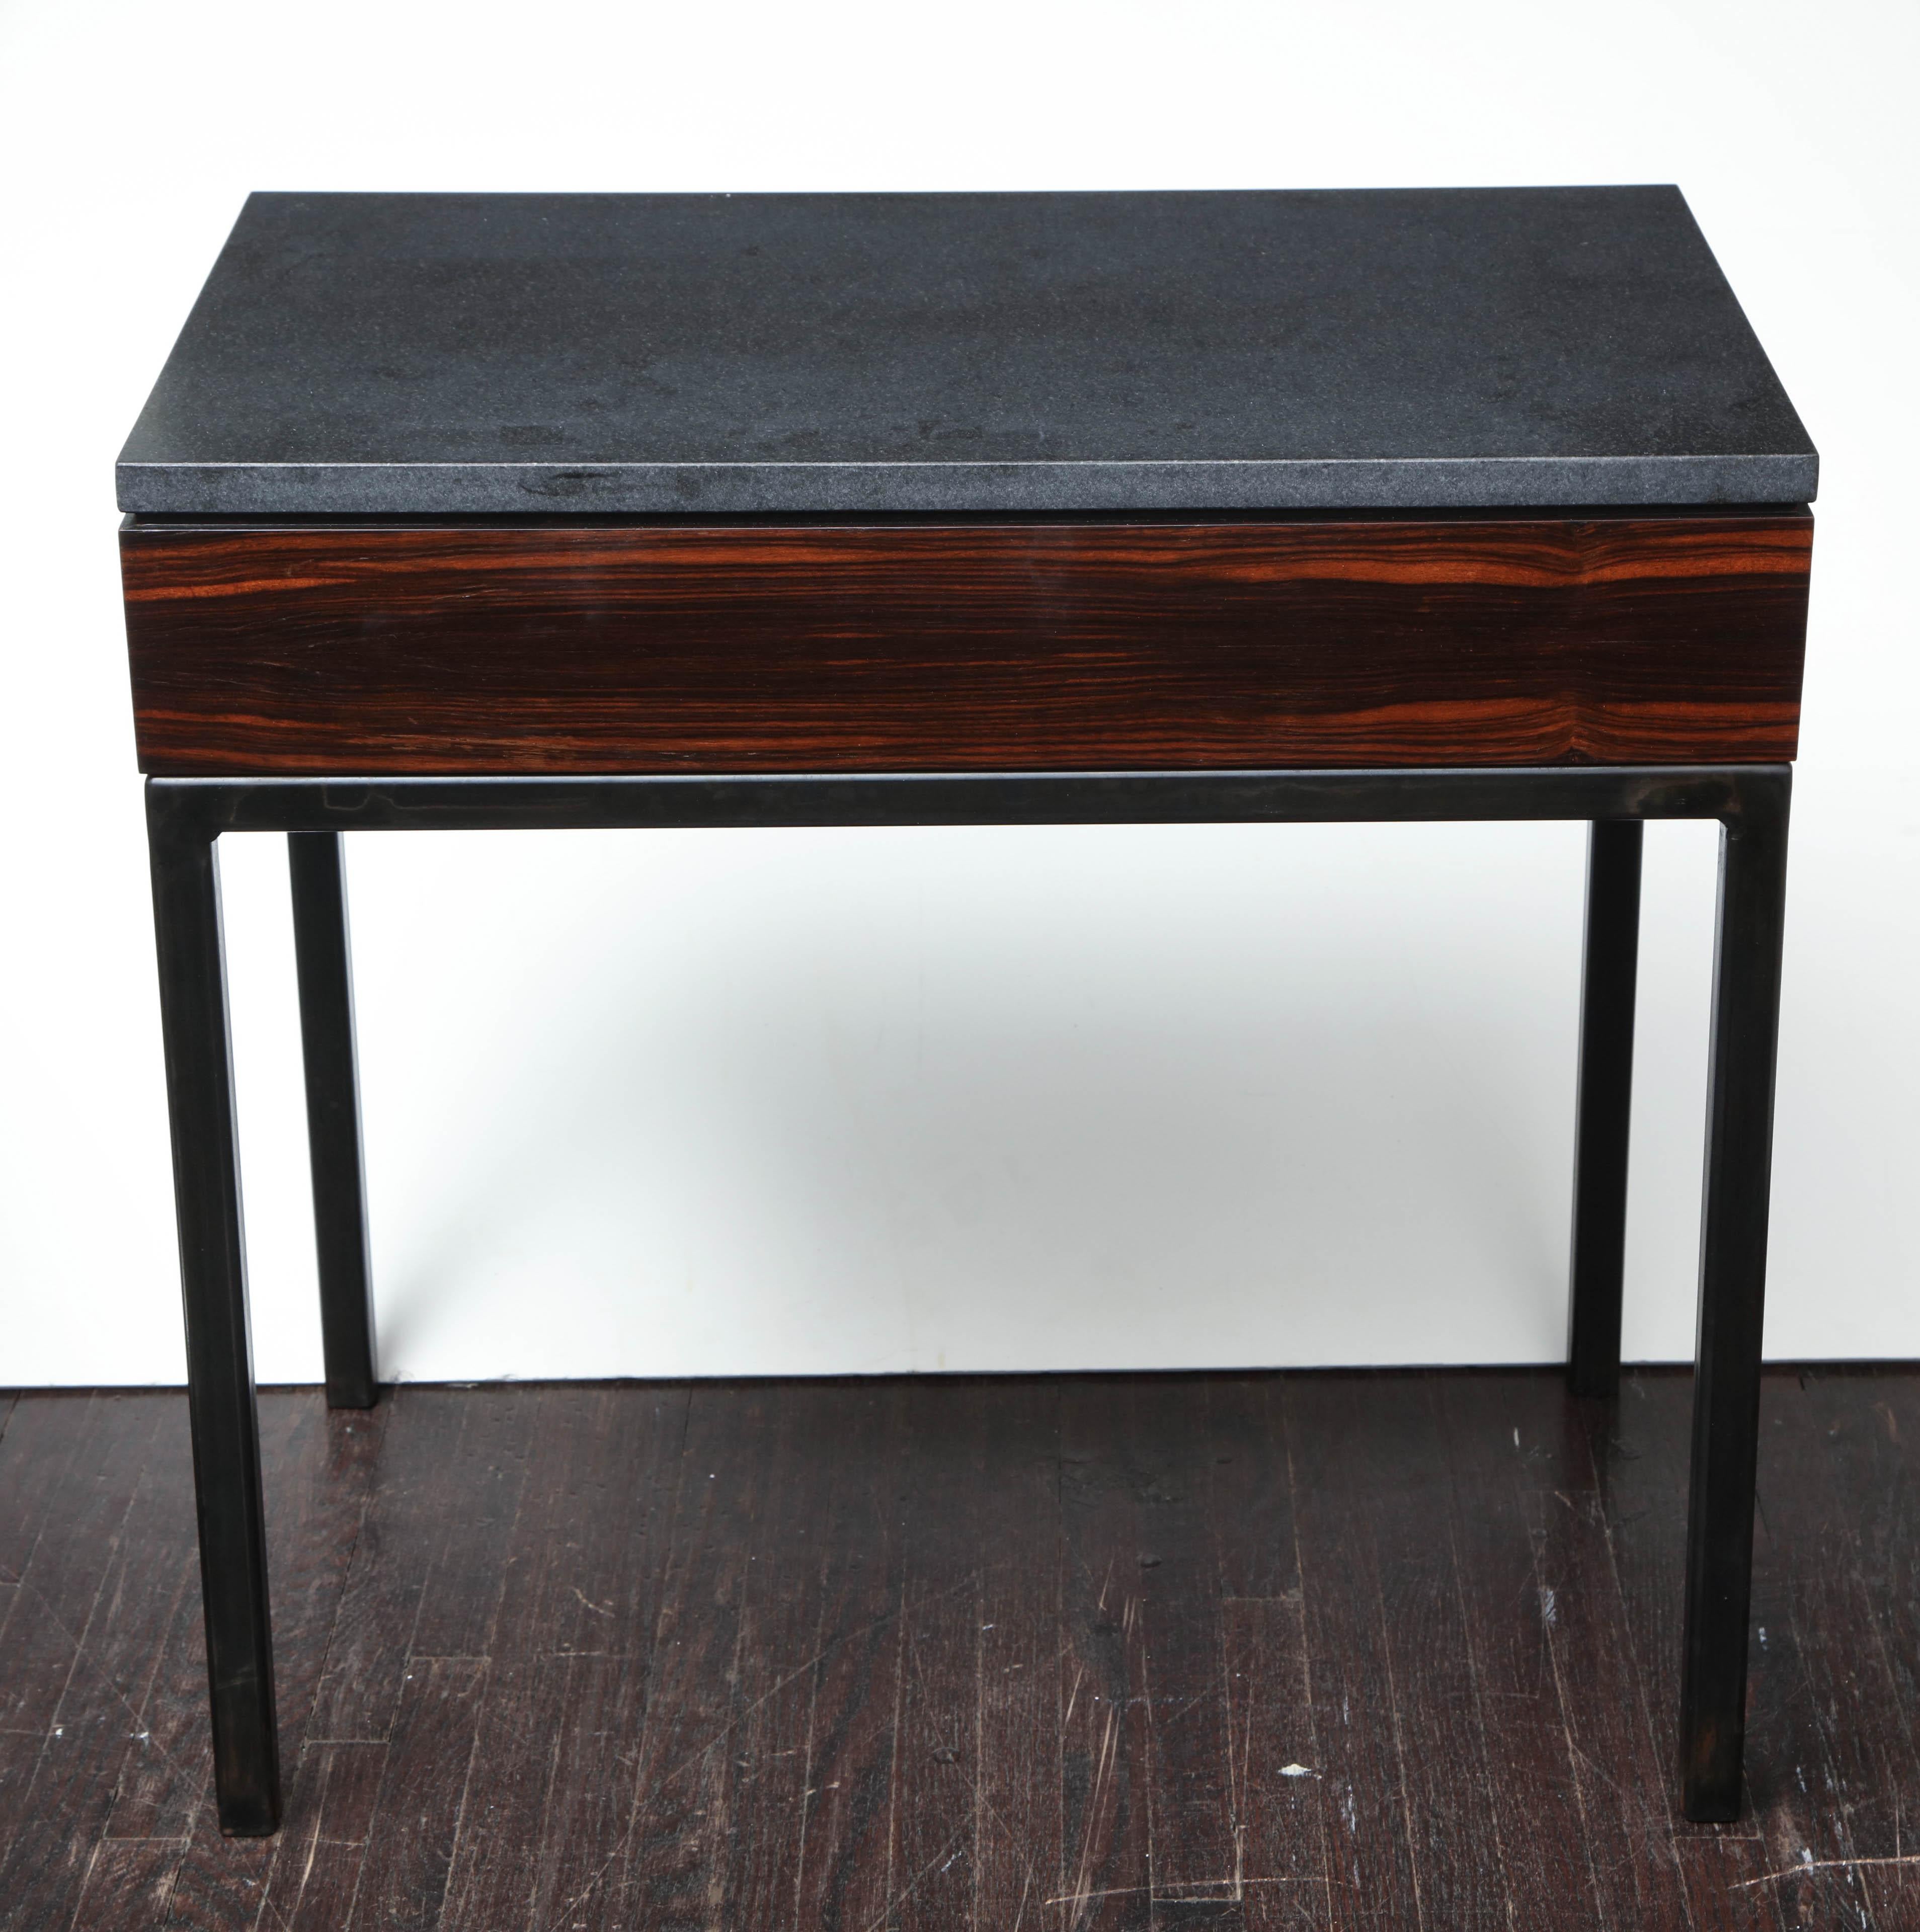 Wood Absolute Black Granite Side Table